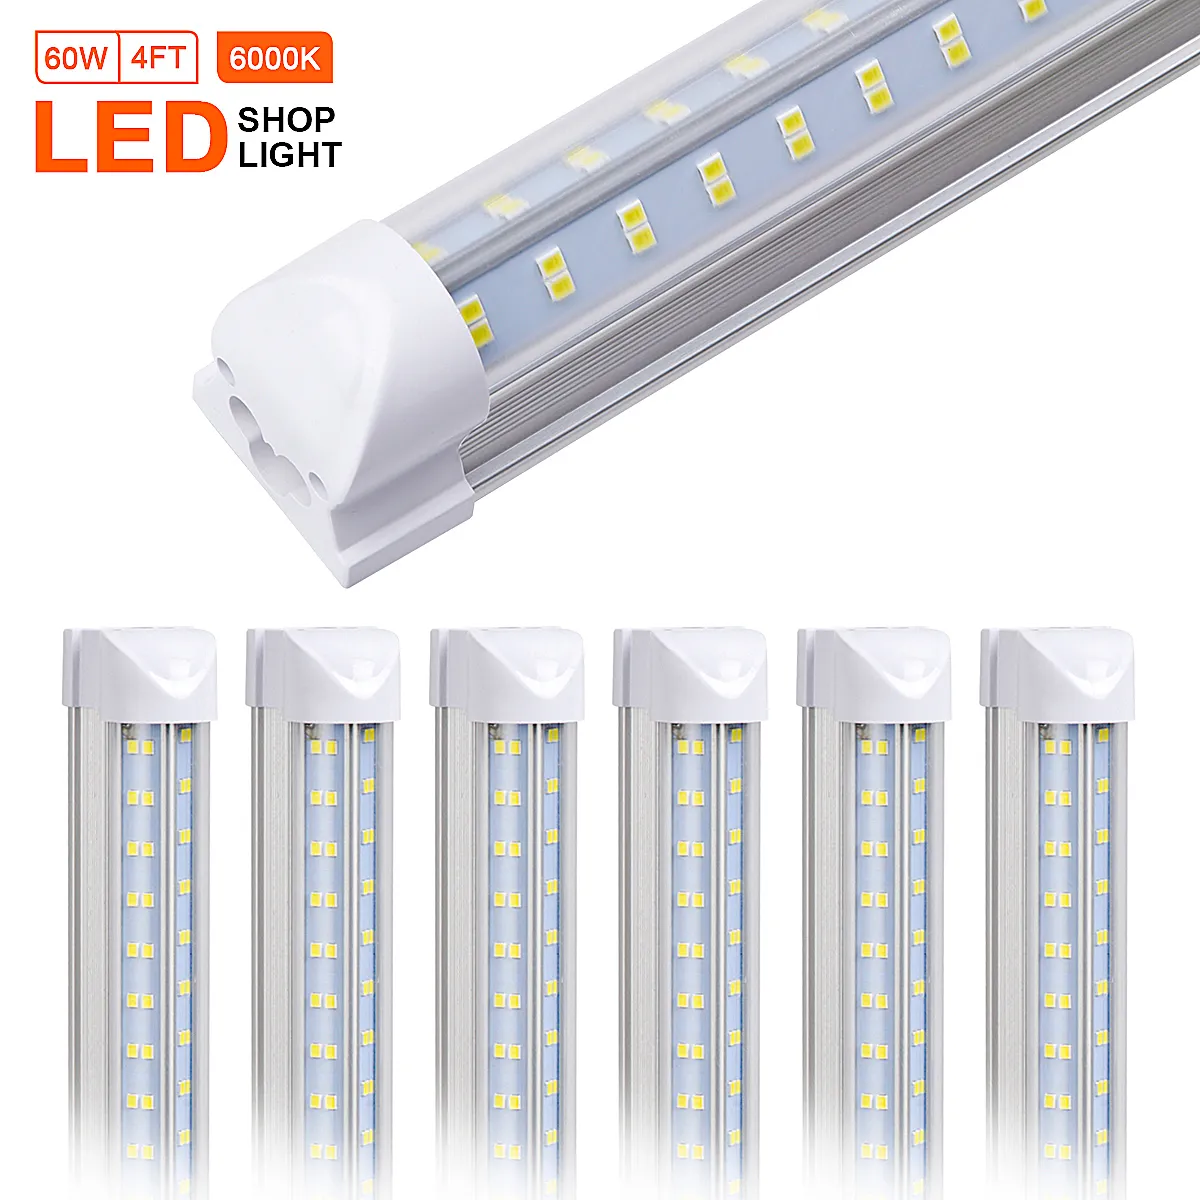 25 stücke T8 LED-Shop-Licht-Leuchte, 4FT 60W, 5000K Tageslicht weiß, klare Linsenabdeckung, doppelt seitlich 4 Reihen V-Form integrierte Birnenlampe, LED-Kühler-Türlicht